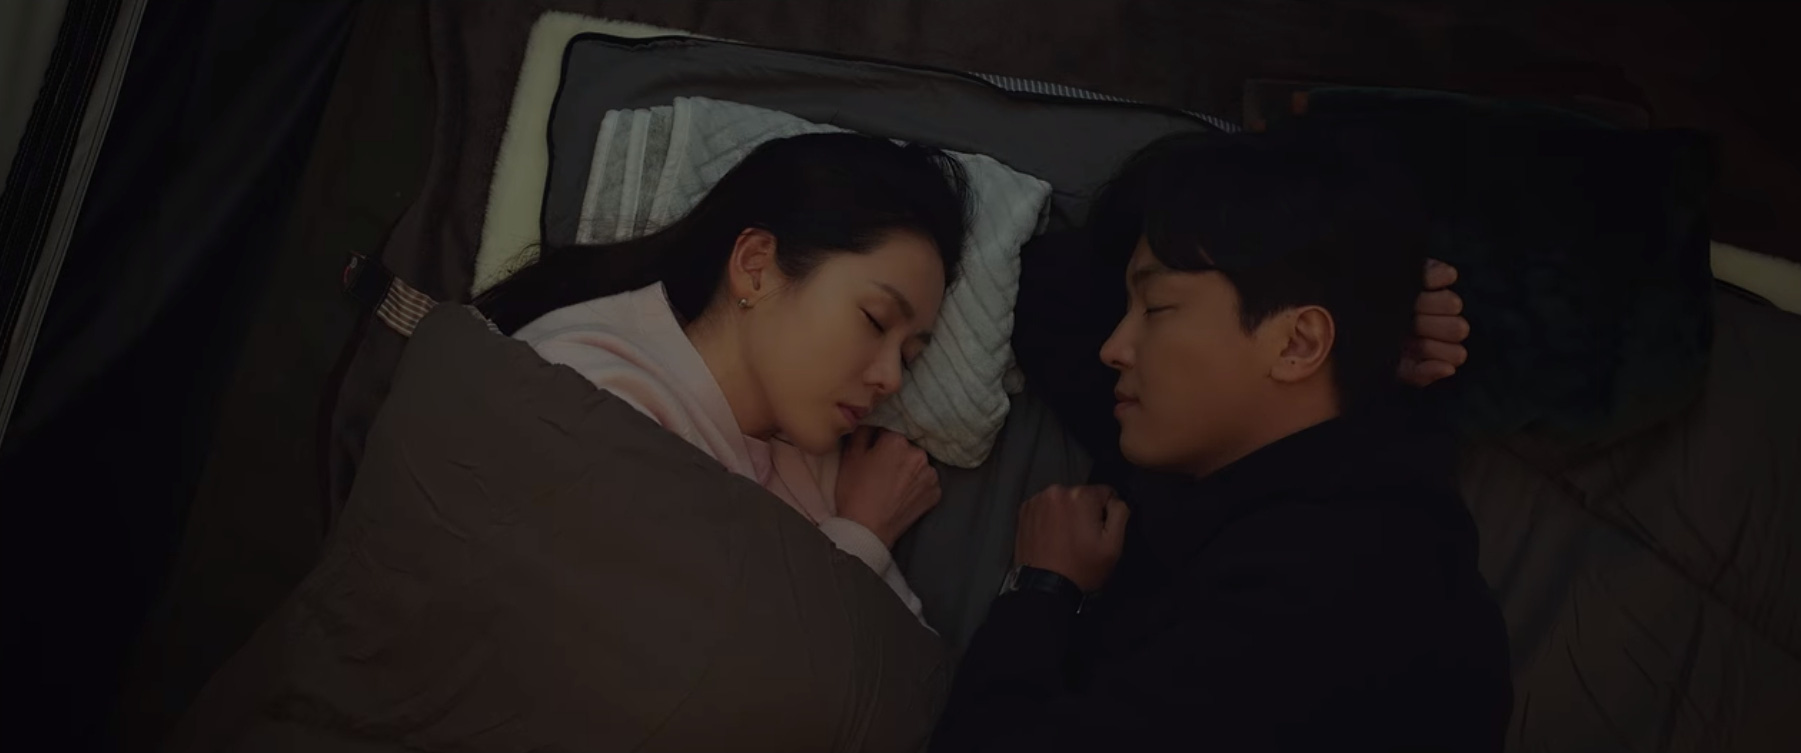 Son Ye Jin chưa gì đã có cảnh giường chiếu với trai trẻ, nhìn chị hạnh phúc mà ghen hộ Hyun Bin luôn! - Ảnh 2.